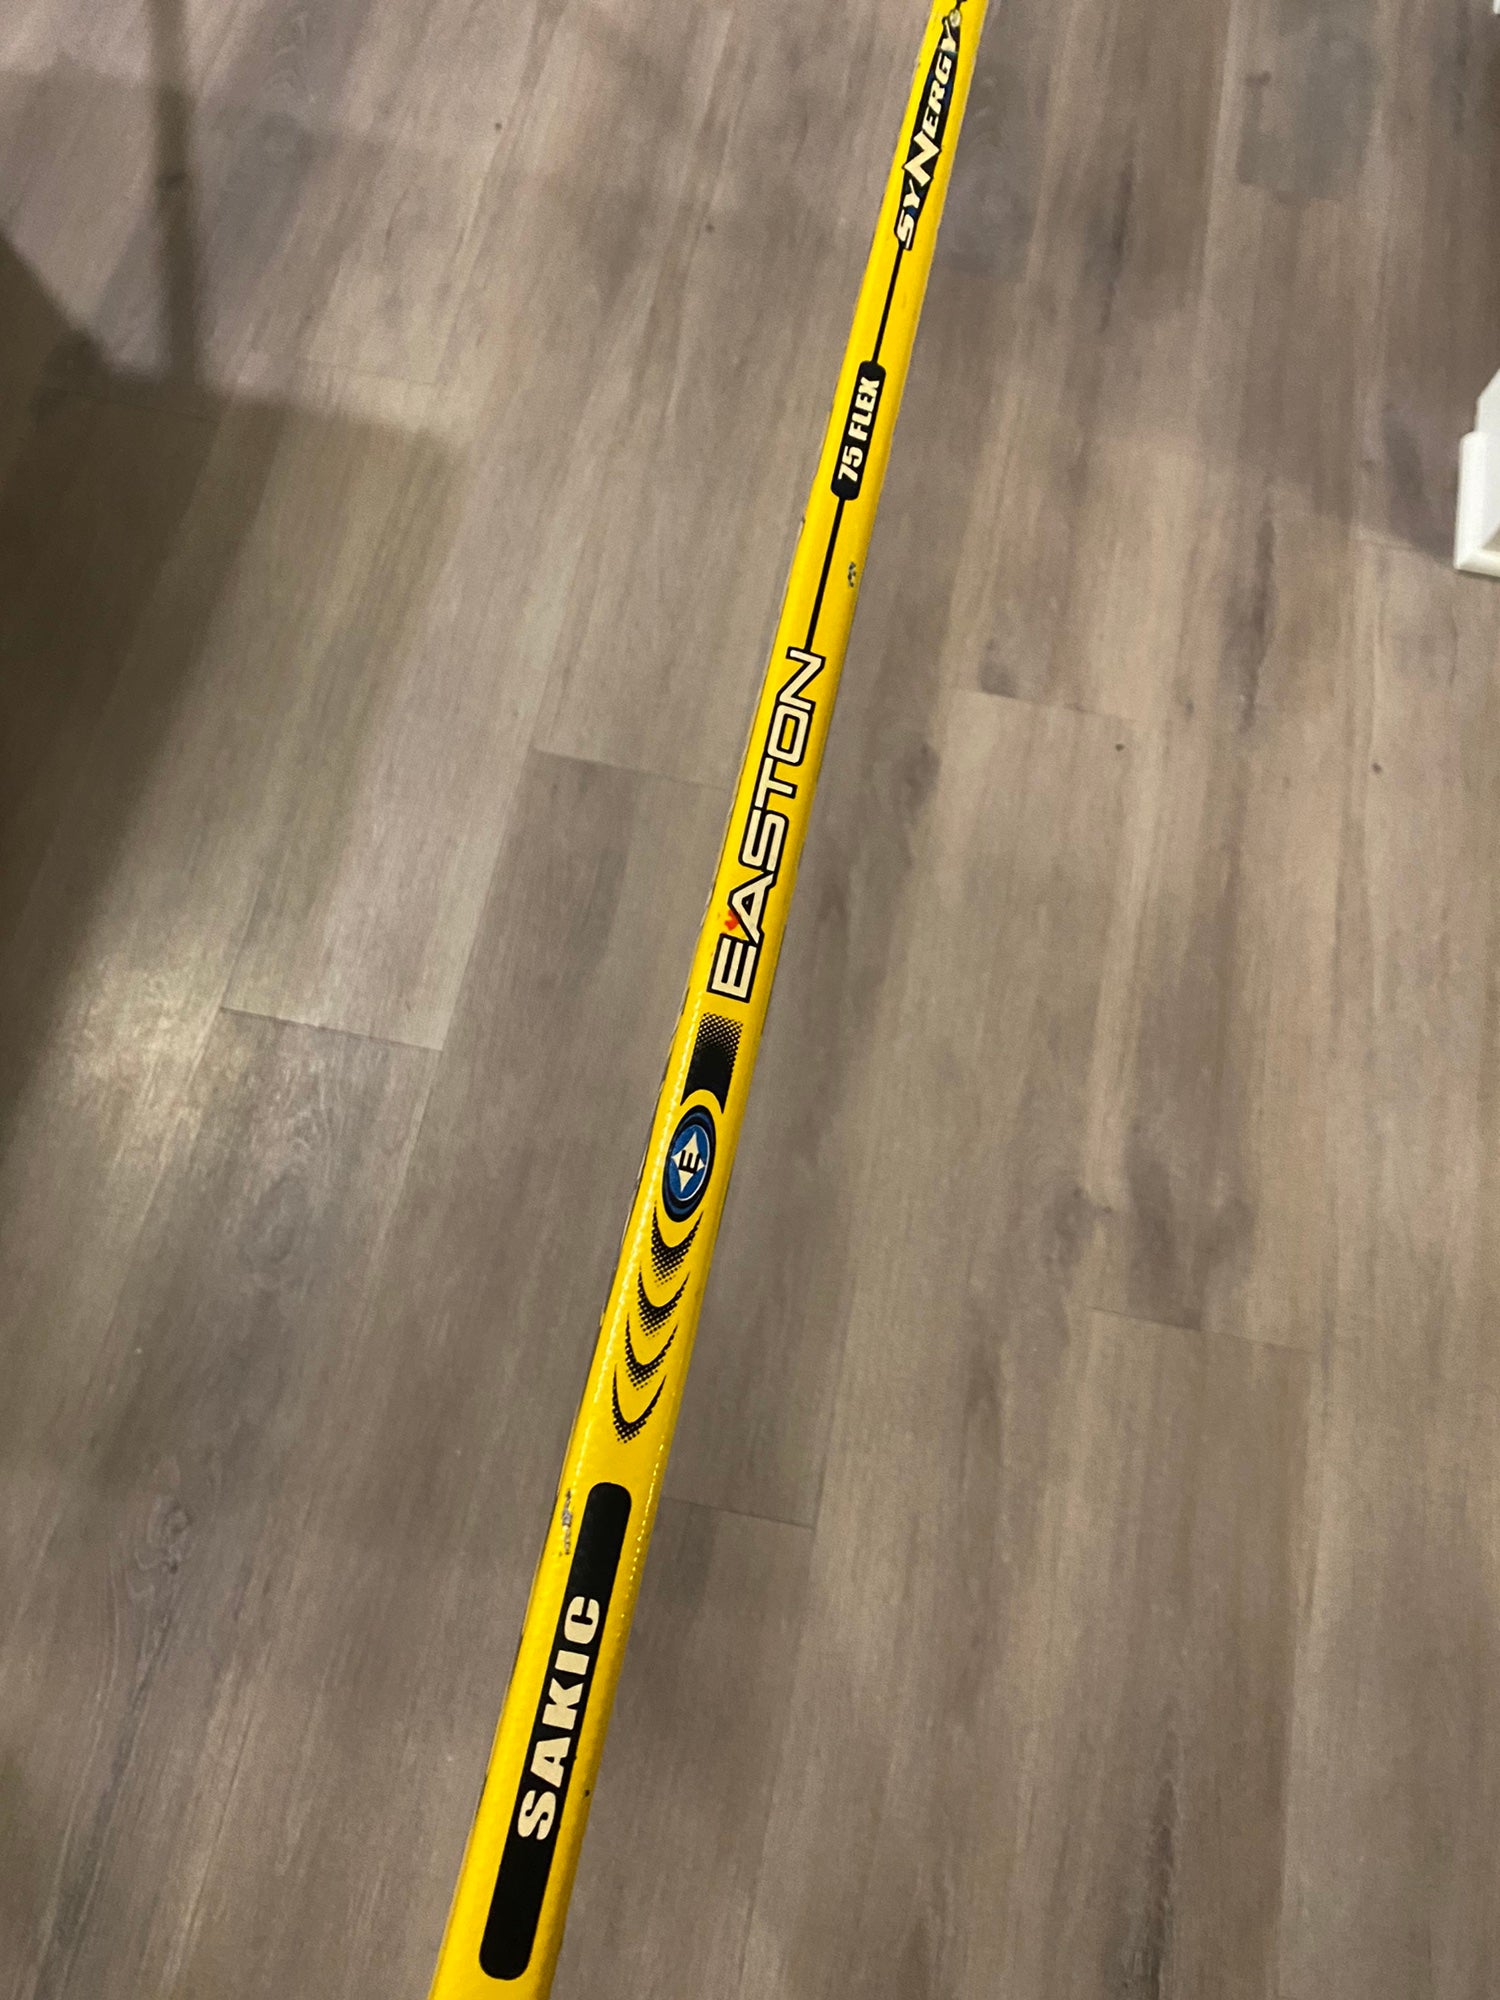 Easton Synergy Yellow Grip Hockey Stick - SENIOR